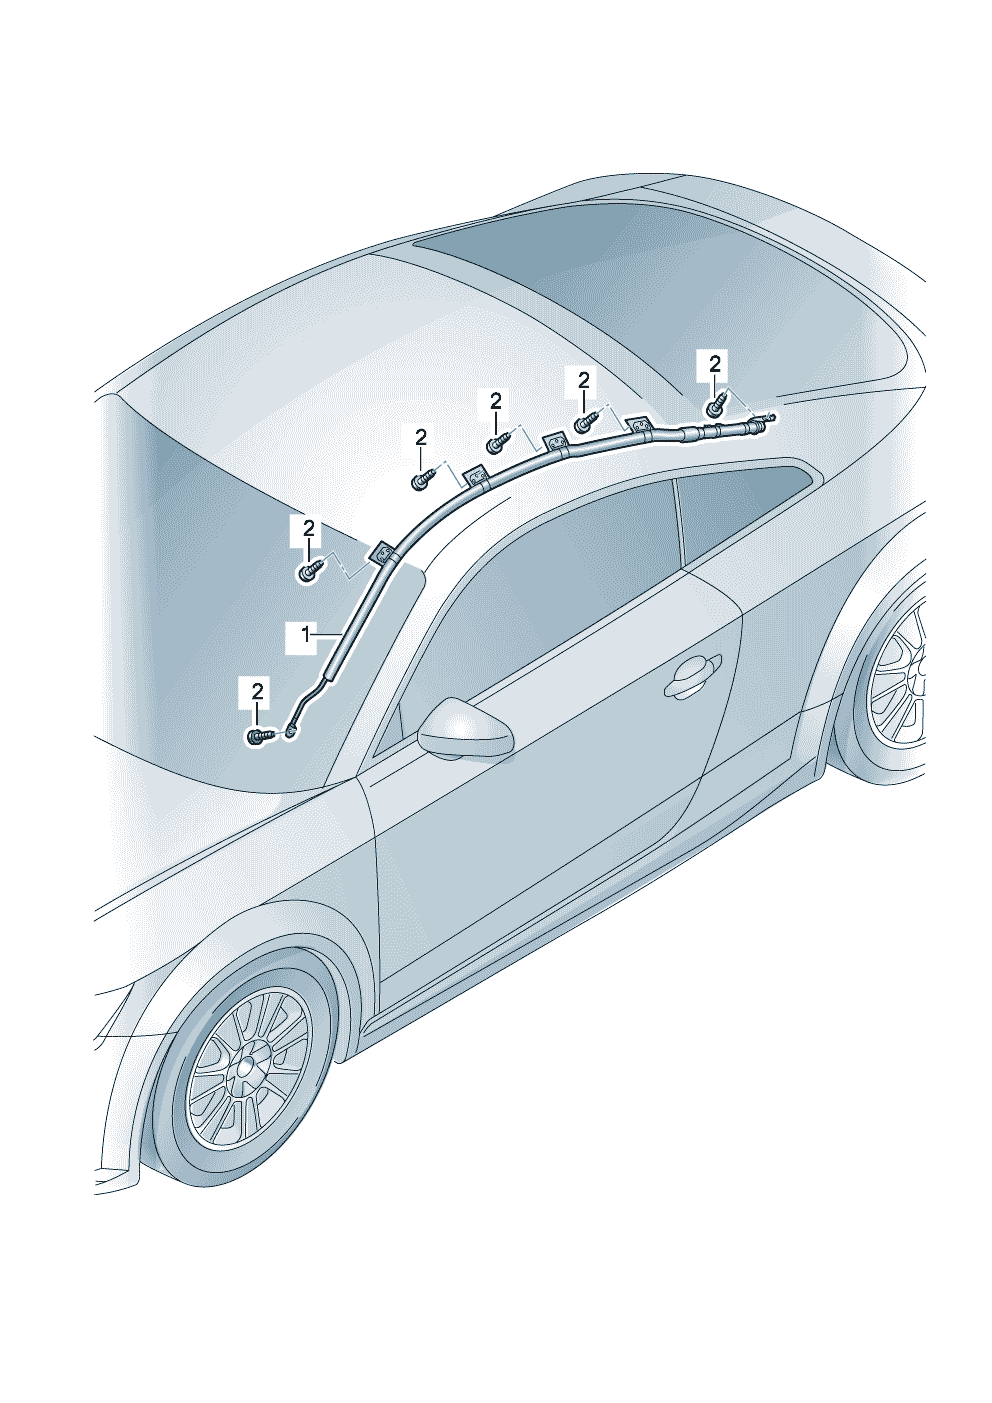 module sac gonfl. de tete<br/><br/><br/><br/><br/> Attention danger <br/><br/><br/><br/><br/><br/>tenir compte manuel reparation  - Audi TT/TTS Coupe/Roadster - att